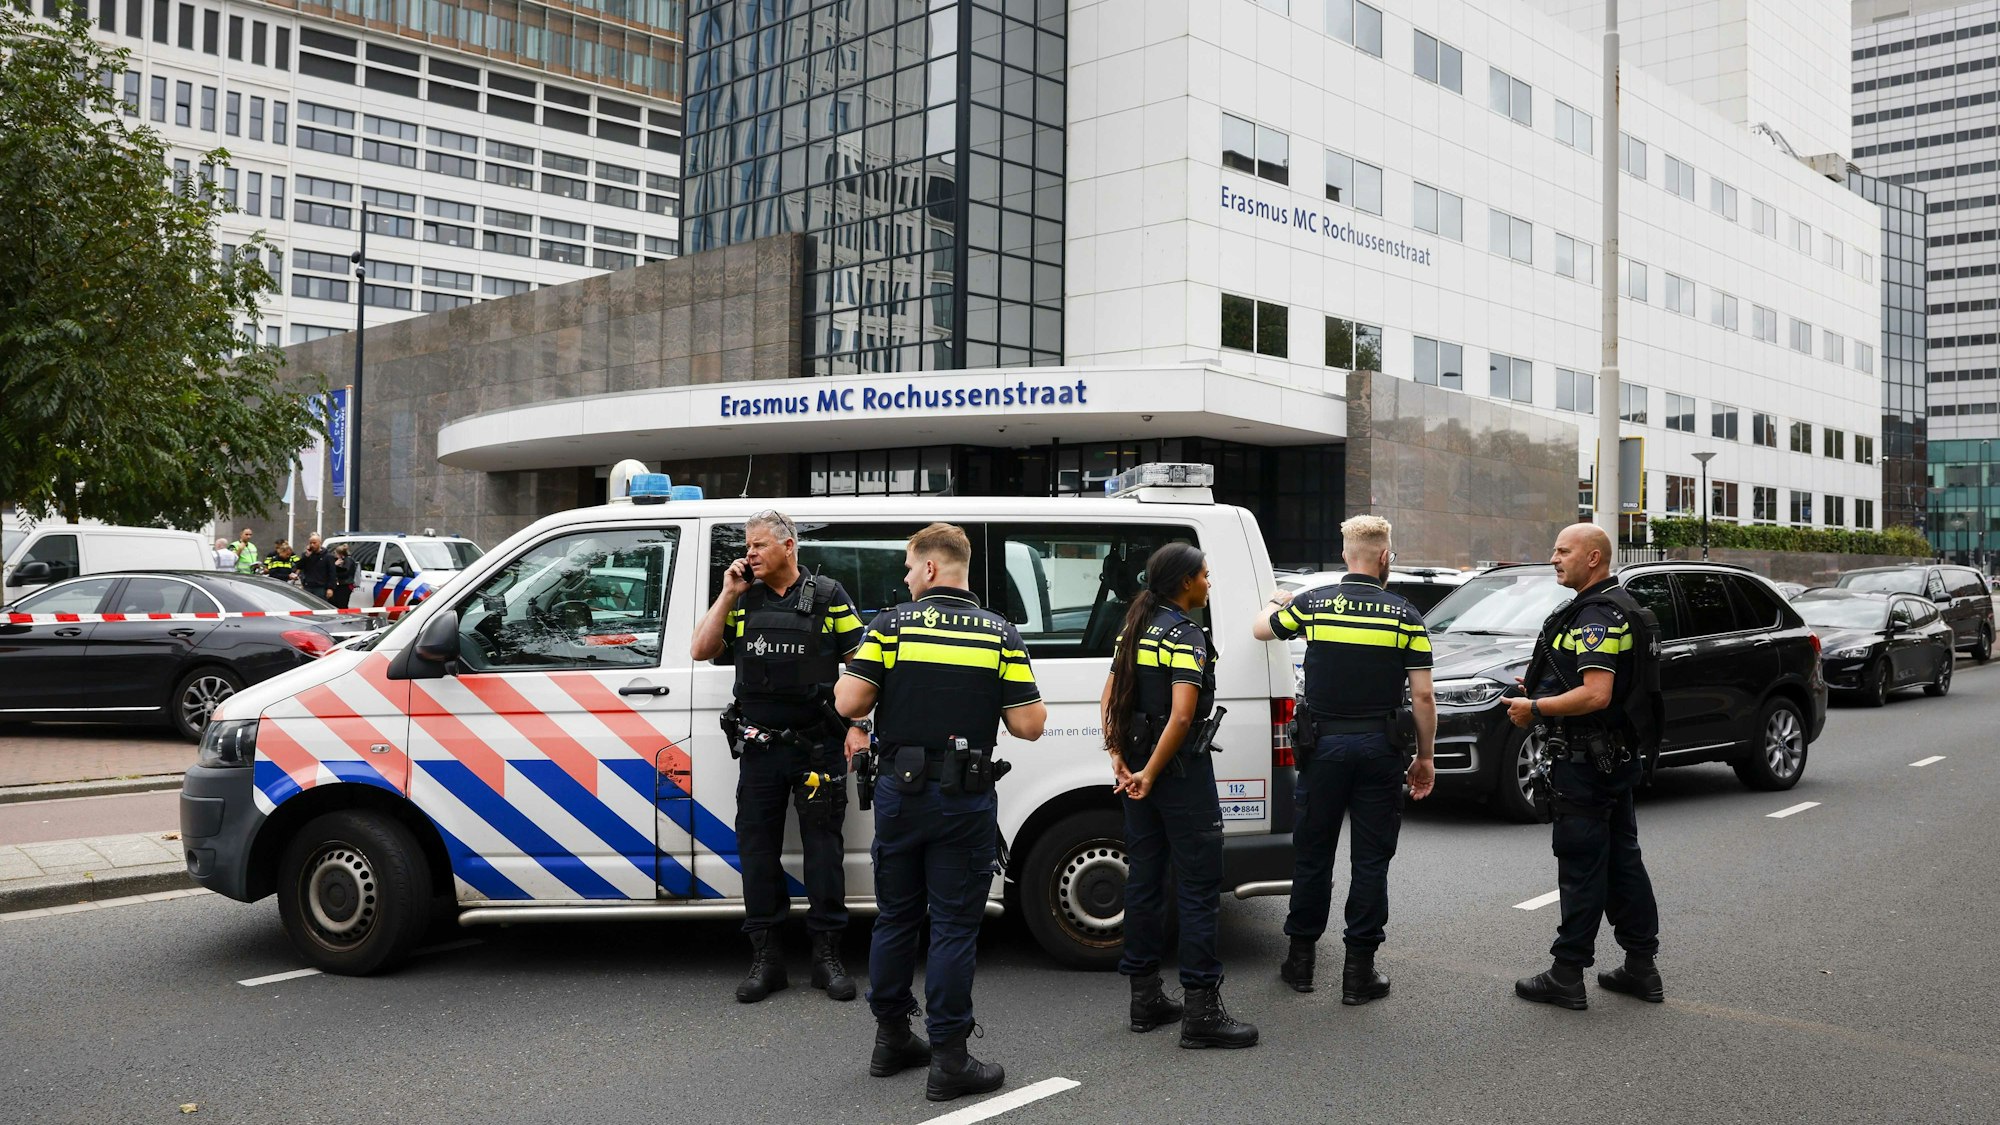 Niederlande, Rotterdam: Polizeibeamte stehen vor dem Erasmus-Krankenhaus.